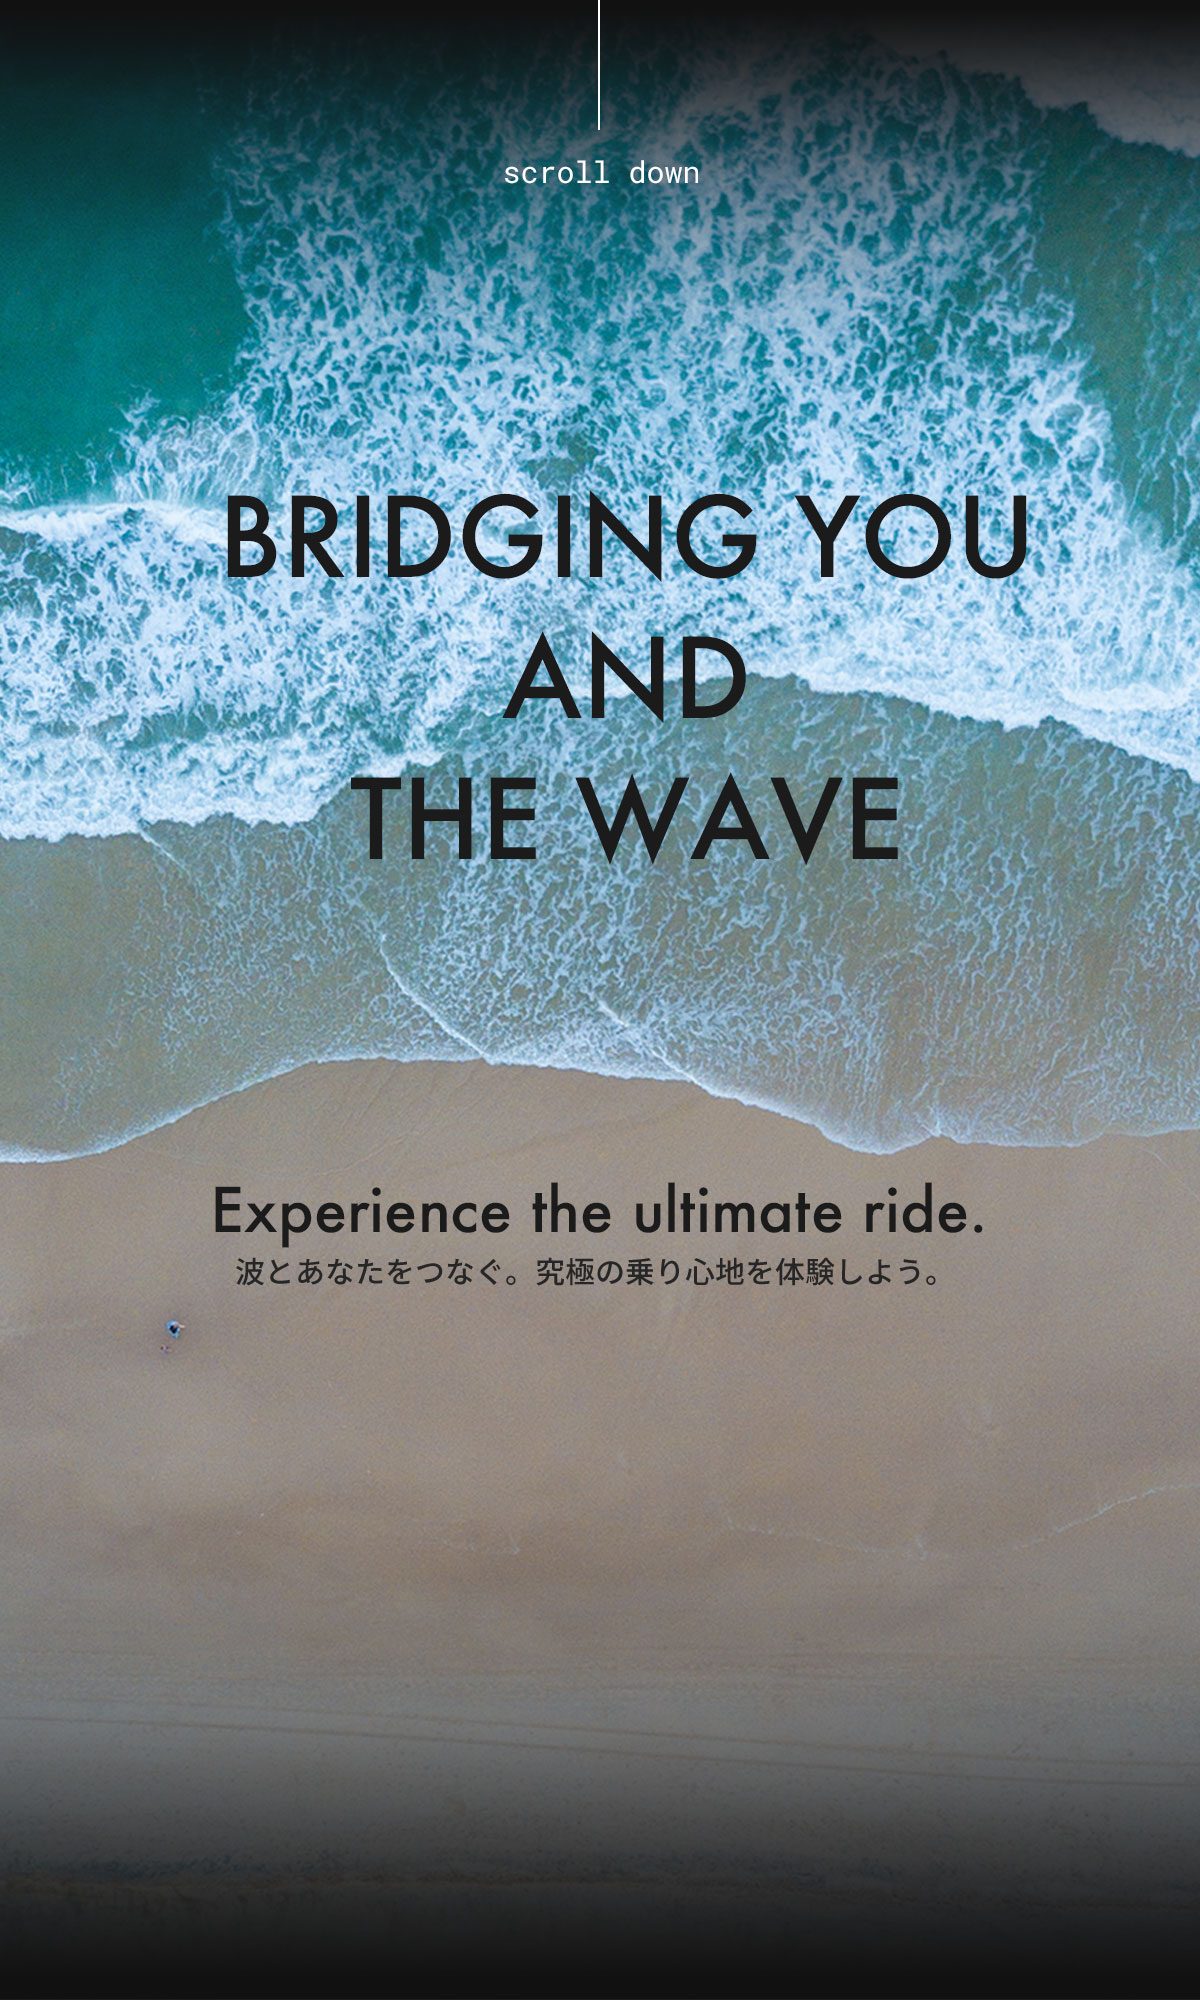 波とあなたをつなぐ。究極の乗り心地を体験しよう